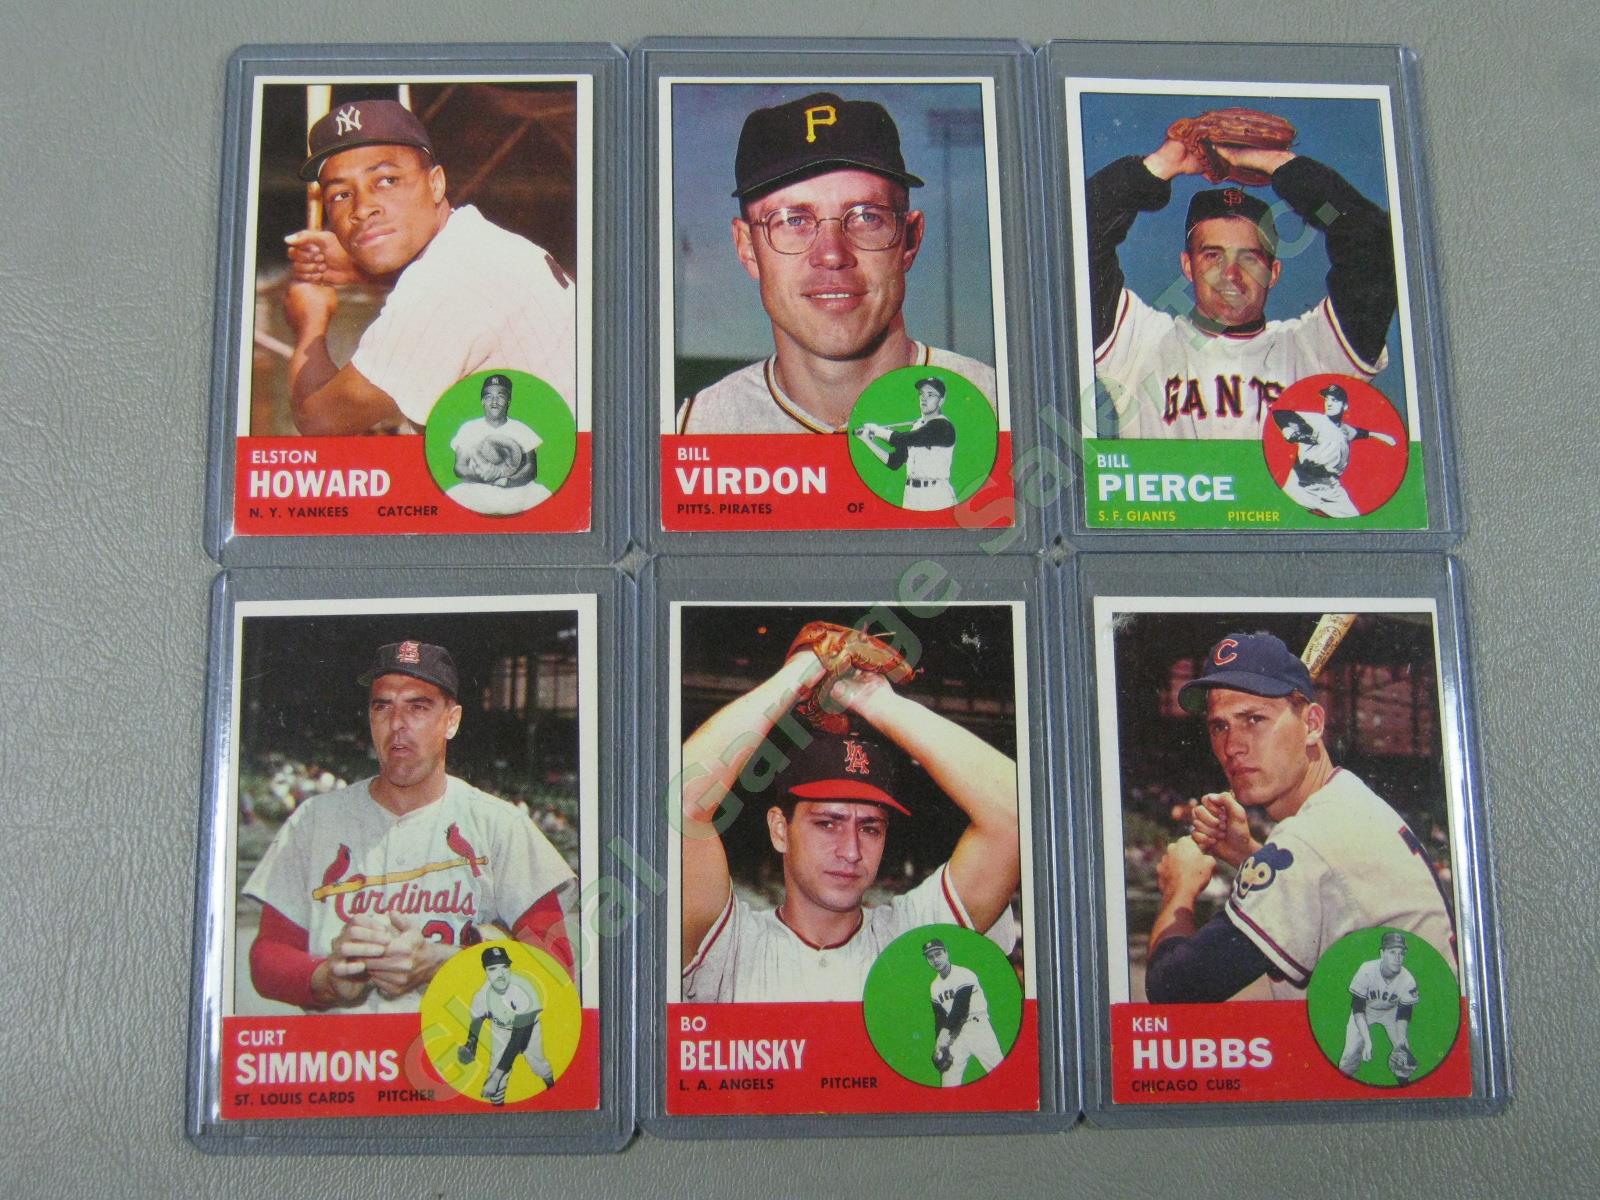 160 Vtg 1961 1962 1963 Topps Baseball Card Lot w/ RBI Home Run Leaders + VG-EX 20